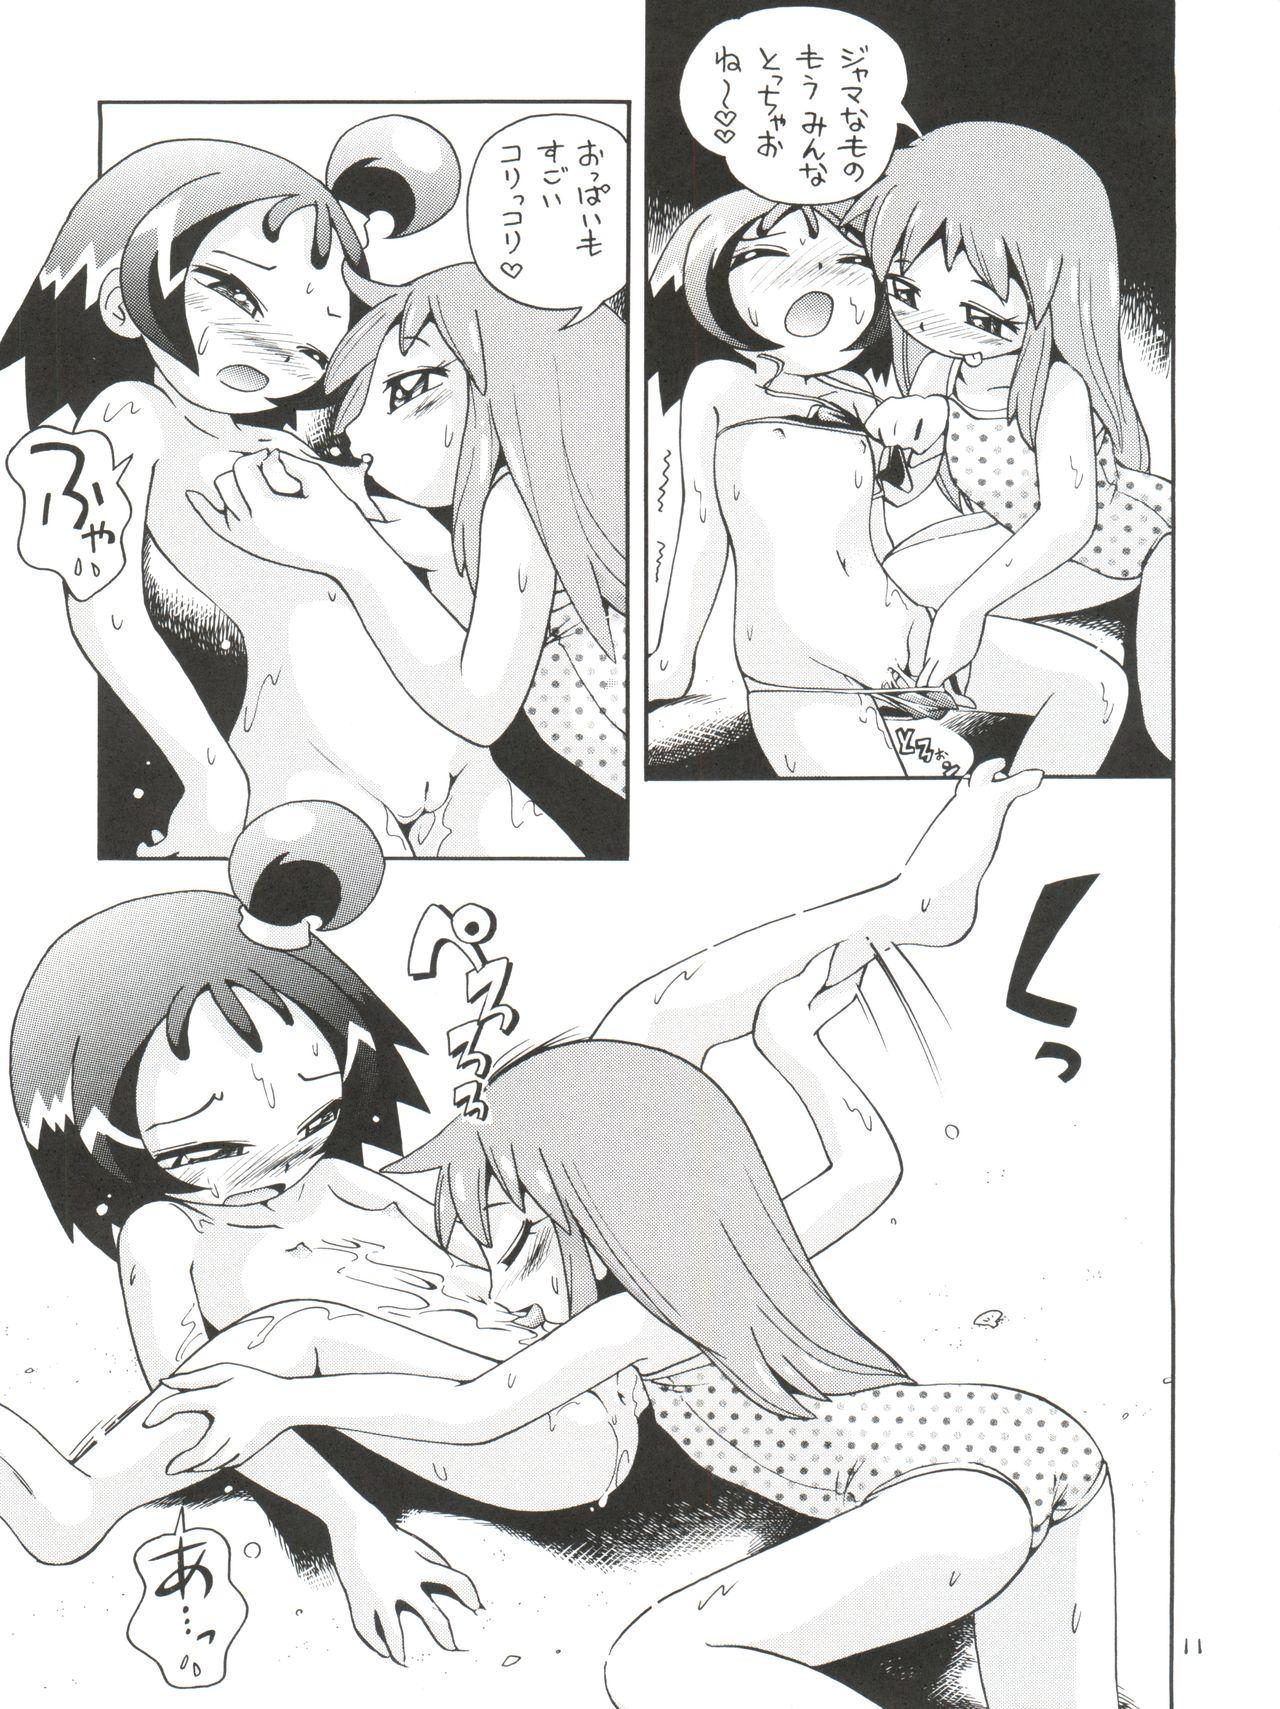 Gayclips Puchi Pure - Cardcaptor sakura Ojamajo doremi Azumanga daioh Fushigiboshi no futagohime Nyanda kamen Gay Boyporn - Page 11